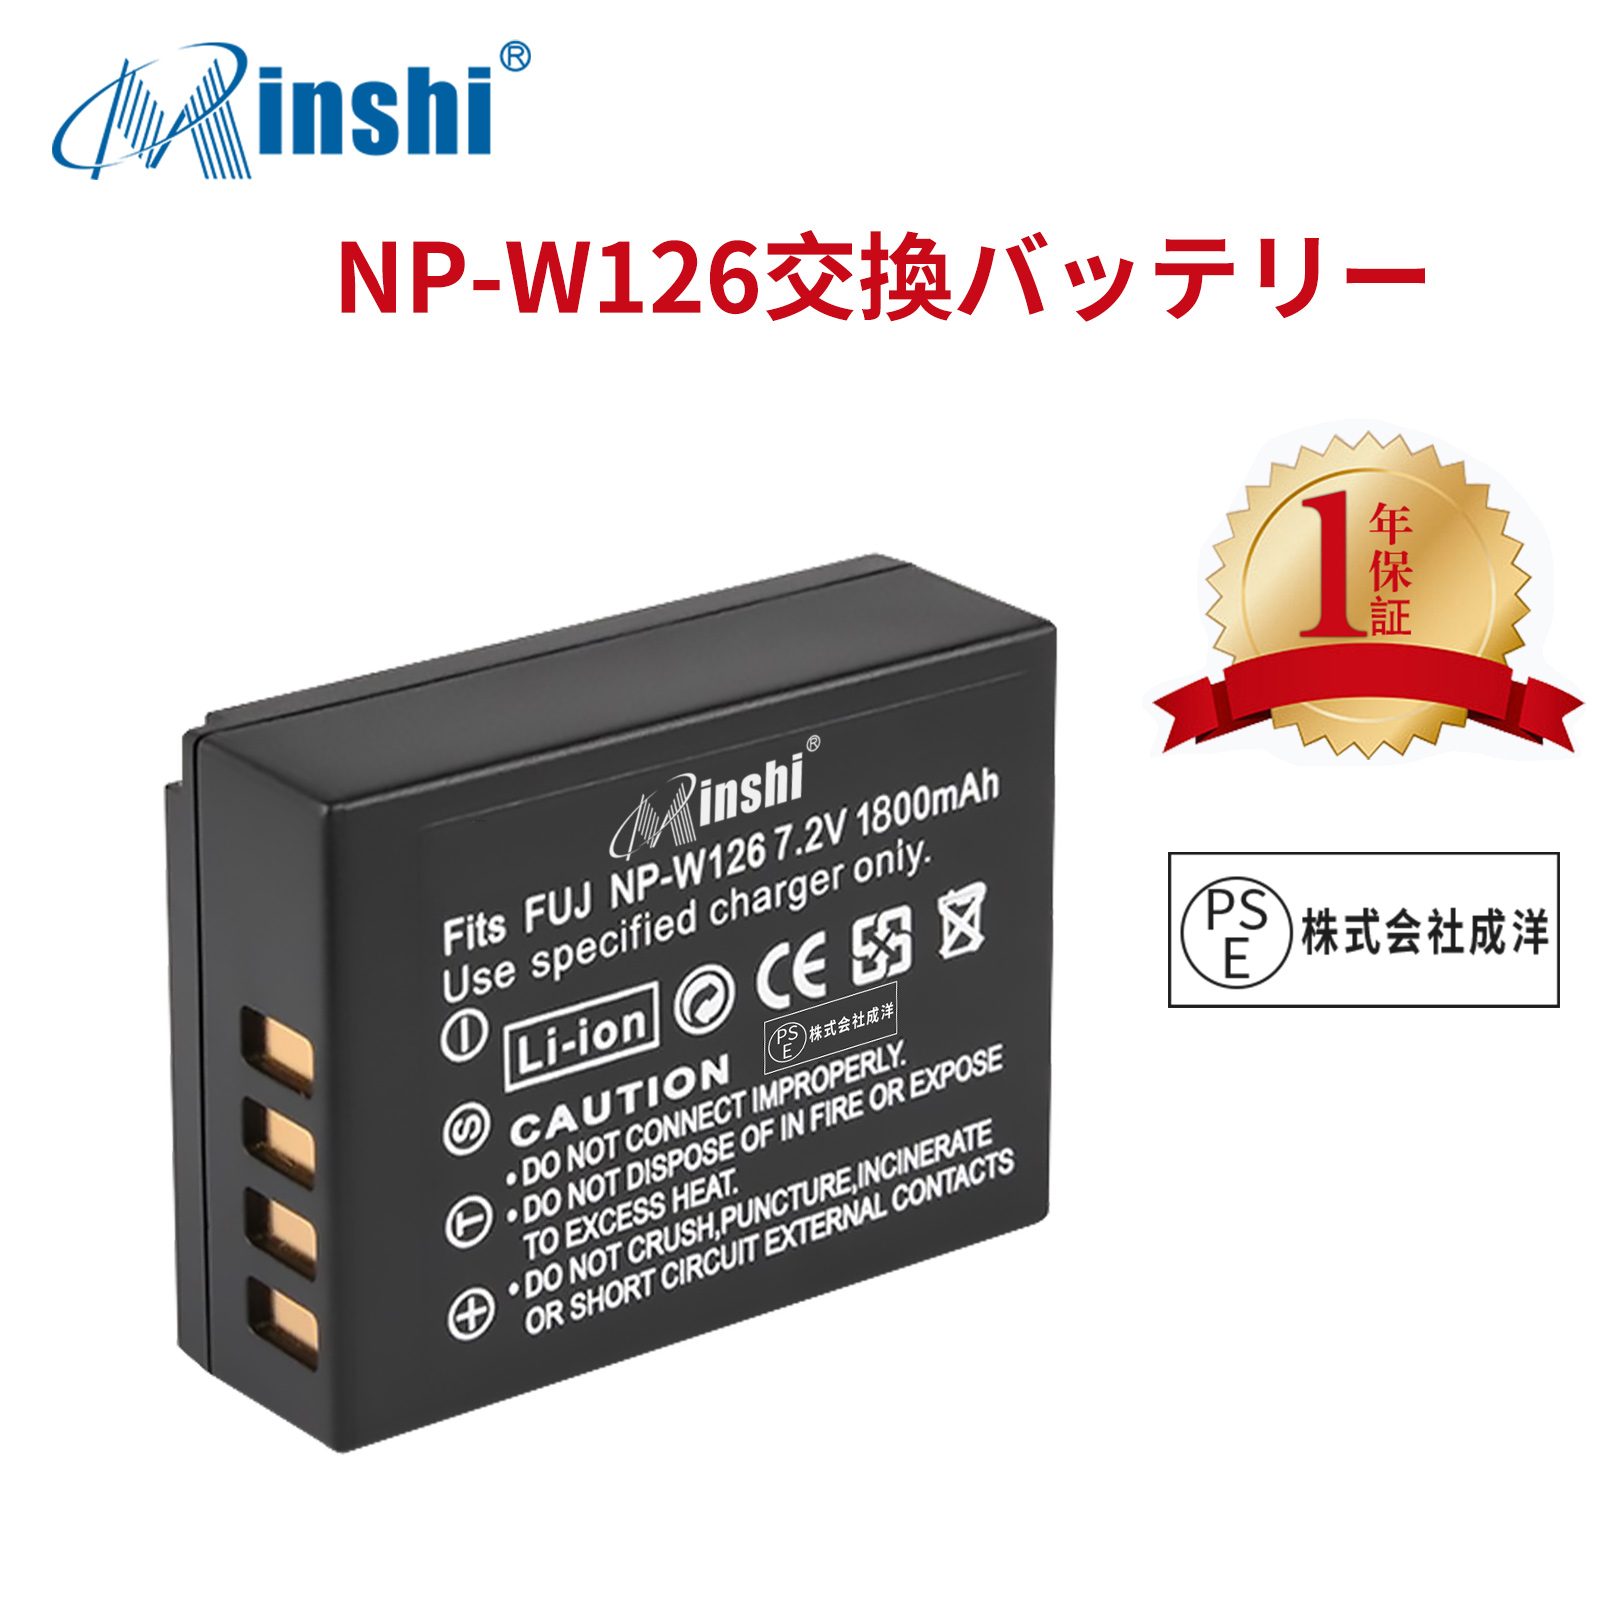 【1年保証】minshi FUJIFILM FinePix HS30EXR【1800mAh 7.2V】 NP-W126 NP-W126S高品質 NP-W126S NP-W126互換バッテリー